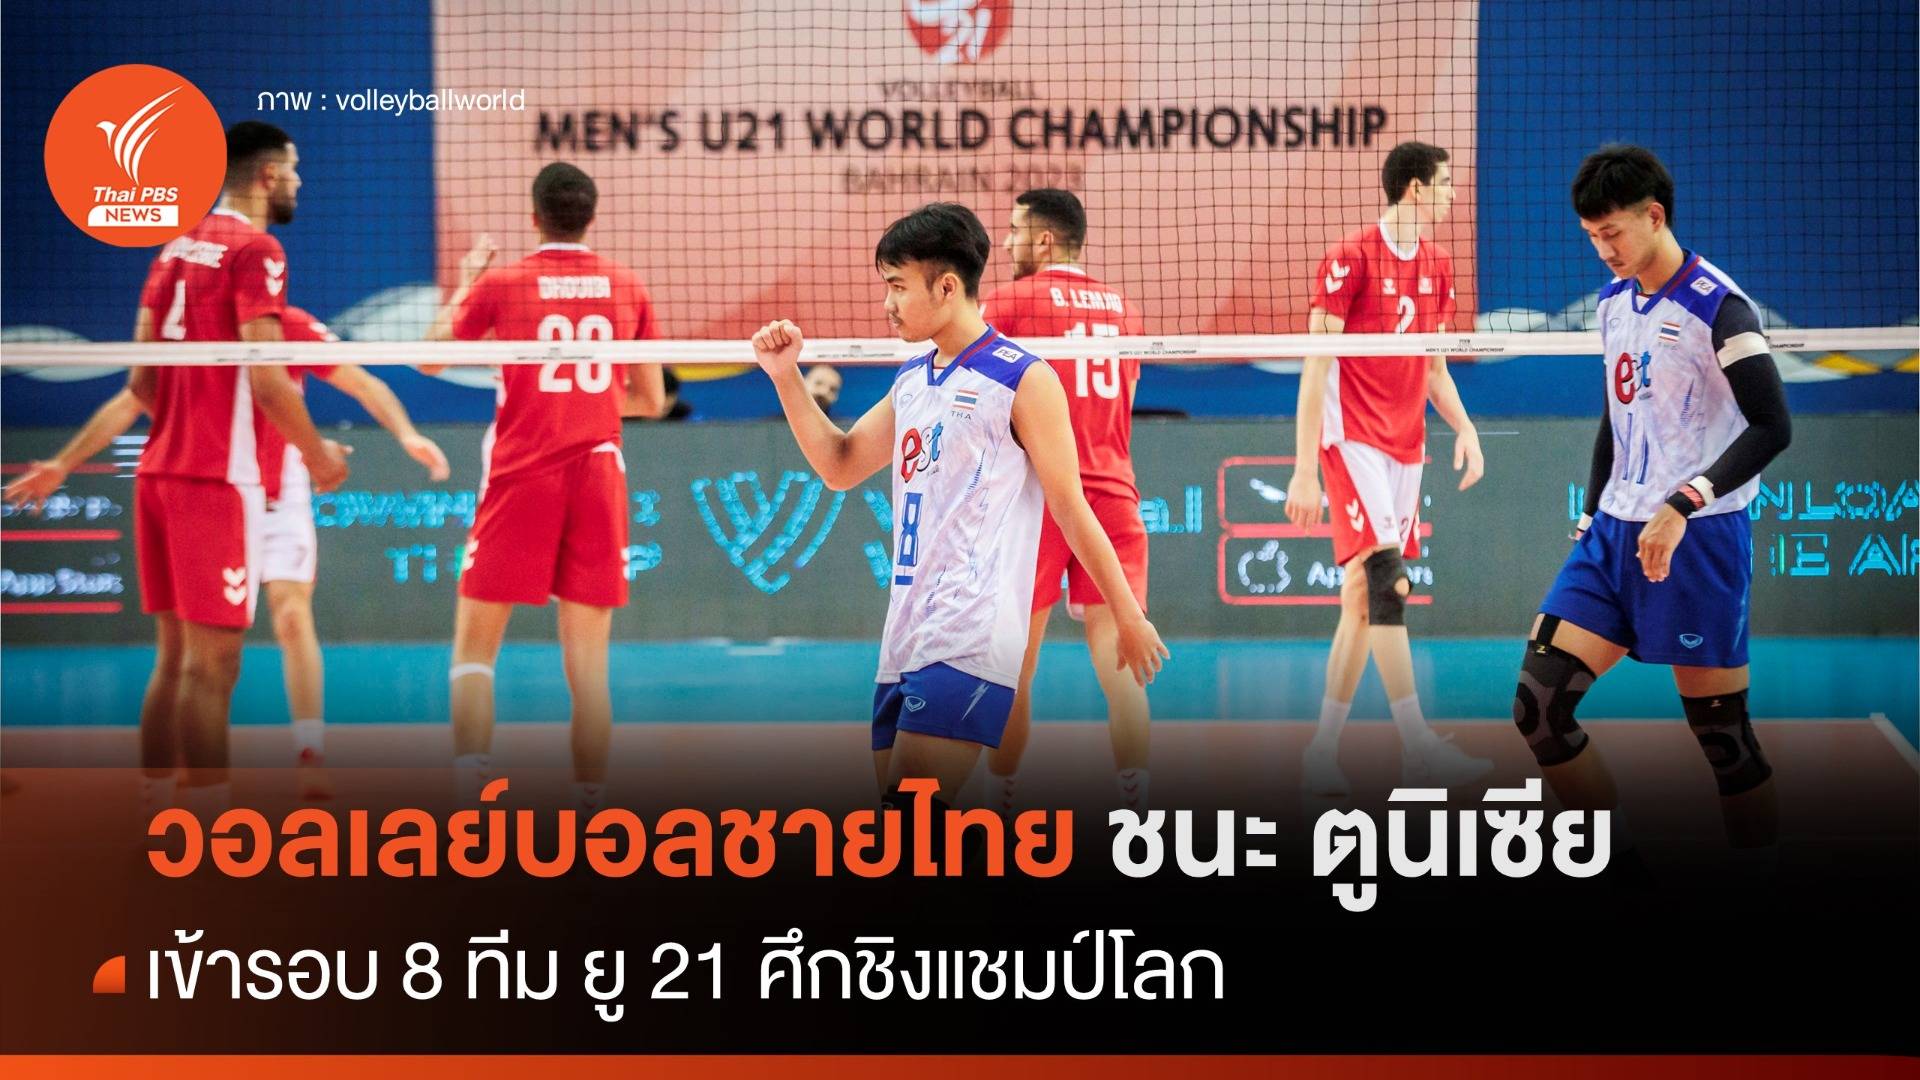 วอลเลย์บอลชายไทย ยู-21 ชนะ ตูนีเซีย เข้ารอบ 8 ทีม ศึกชิงแชมป์โลก